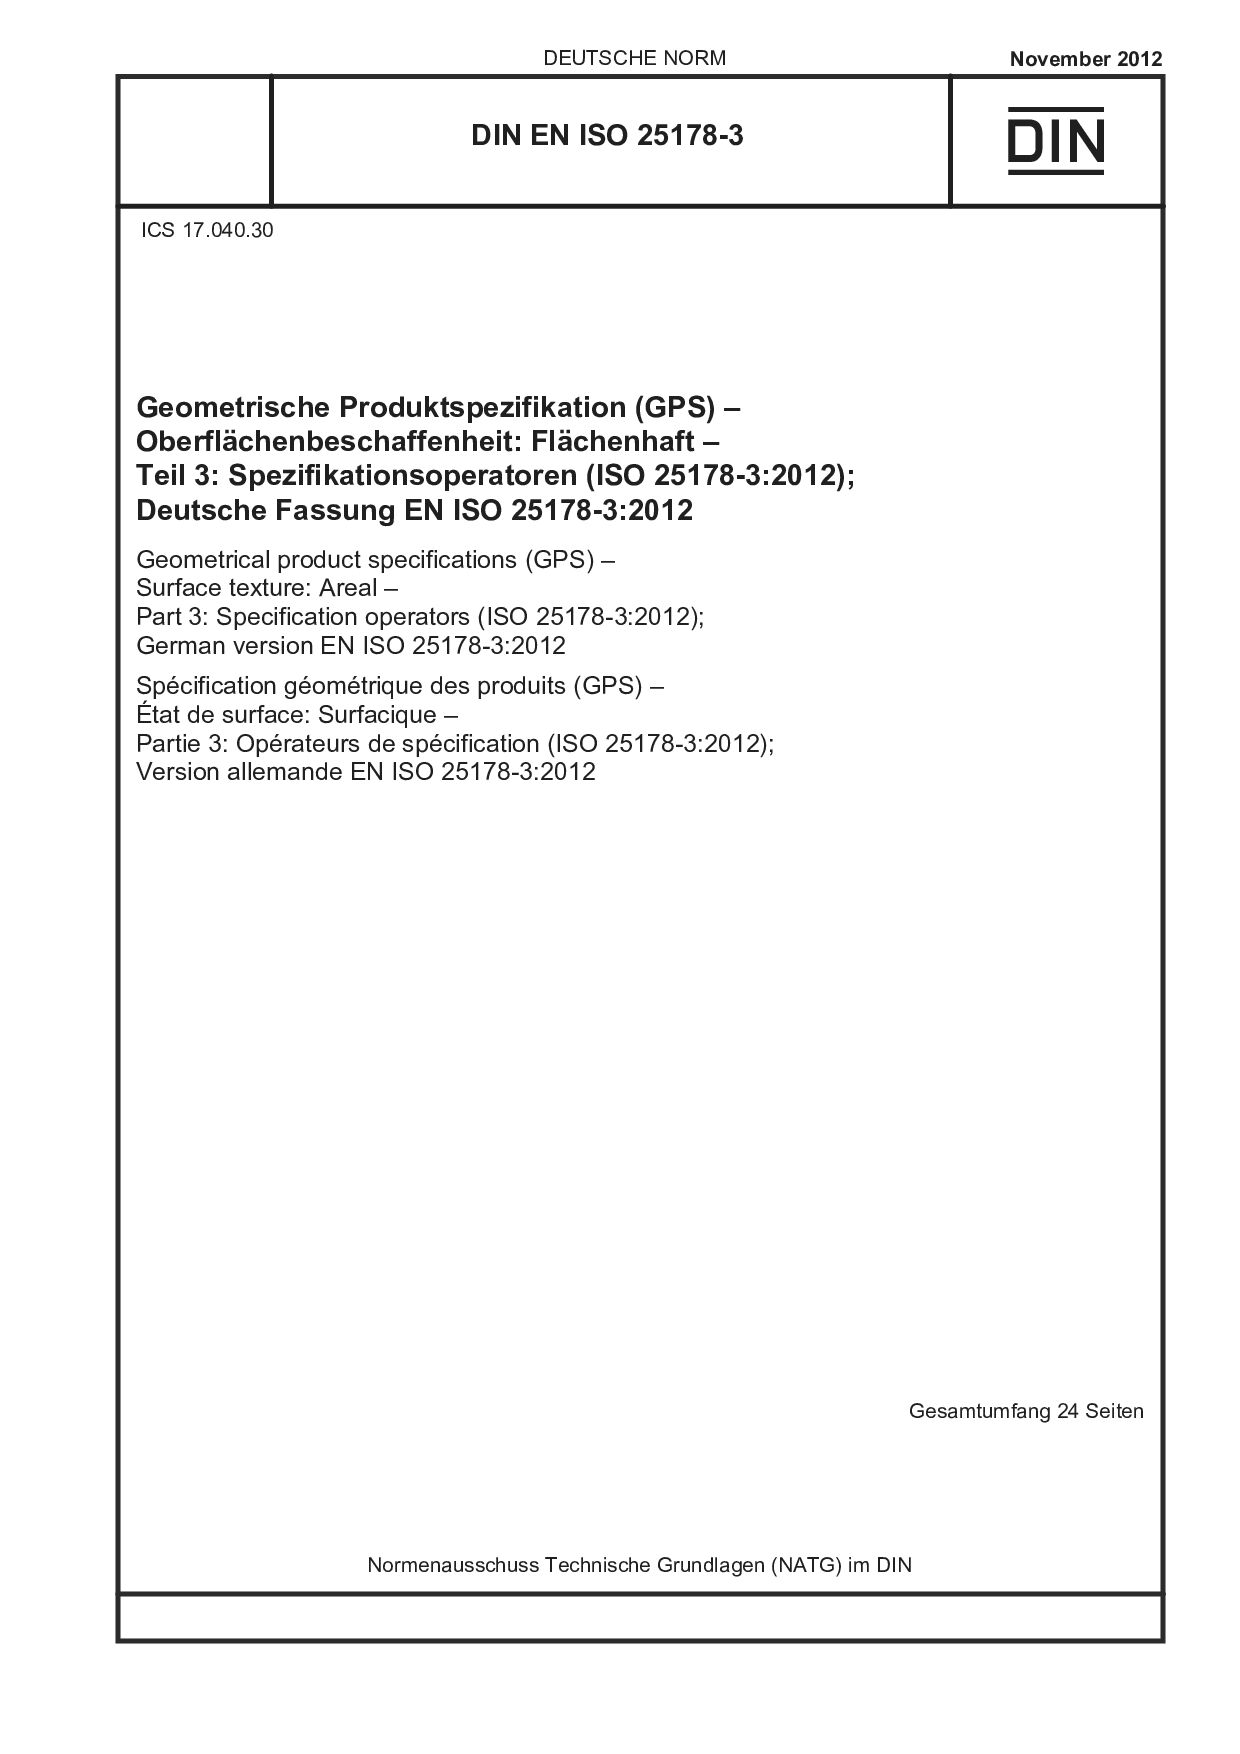 DIN EN ISO 25178-3:2012